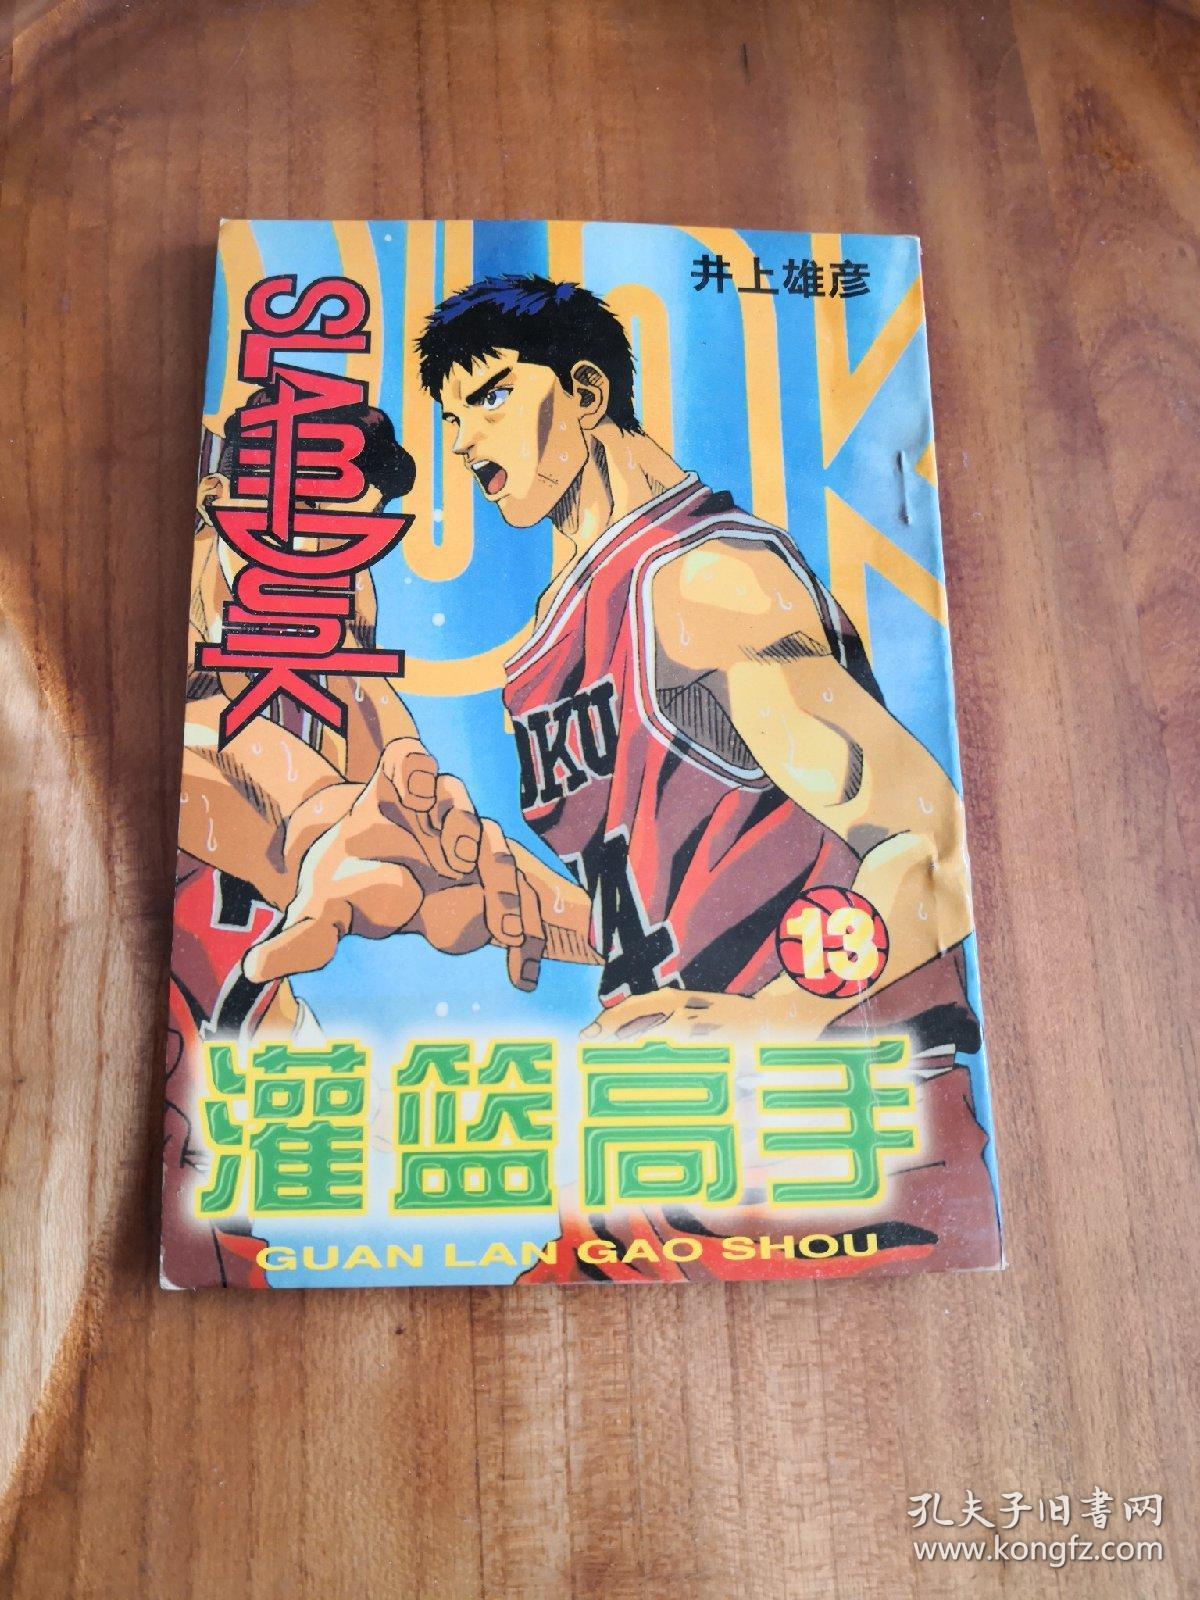 篮球飞人/灌篮高手 (13卷)    新疆青少年出版社